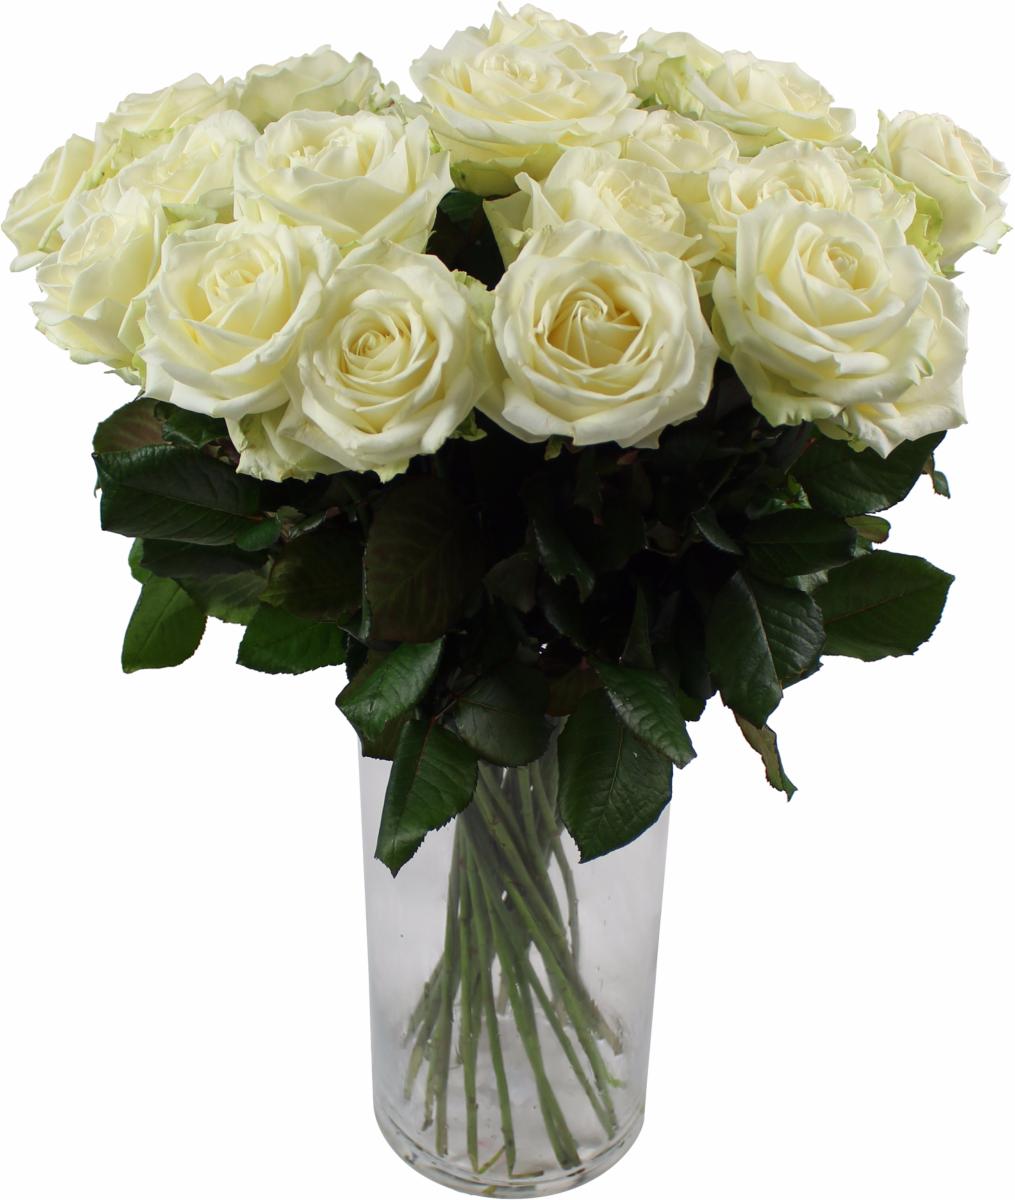 Prix D Une Rose à L unité Fleuriste Offrir des roses blanches à l'unité - La Fontaine Fleurie